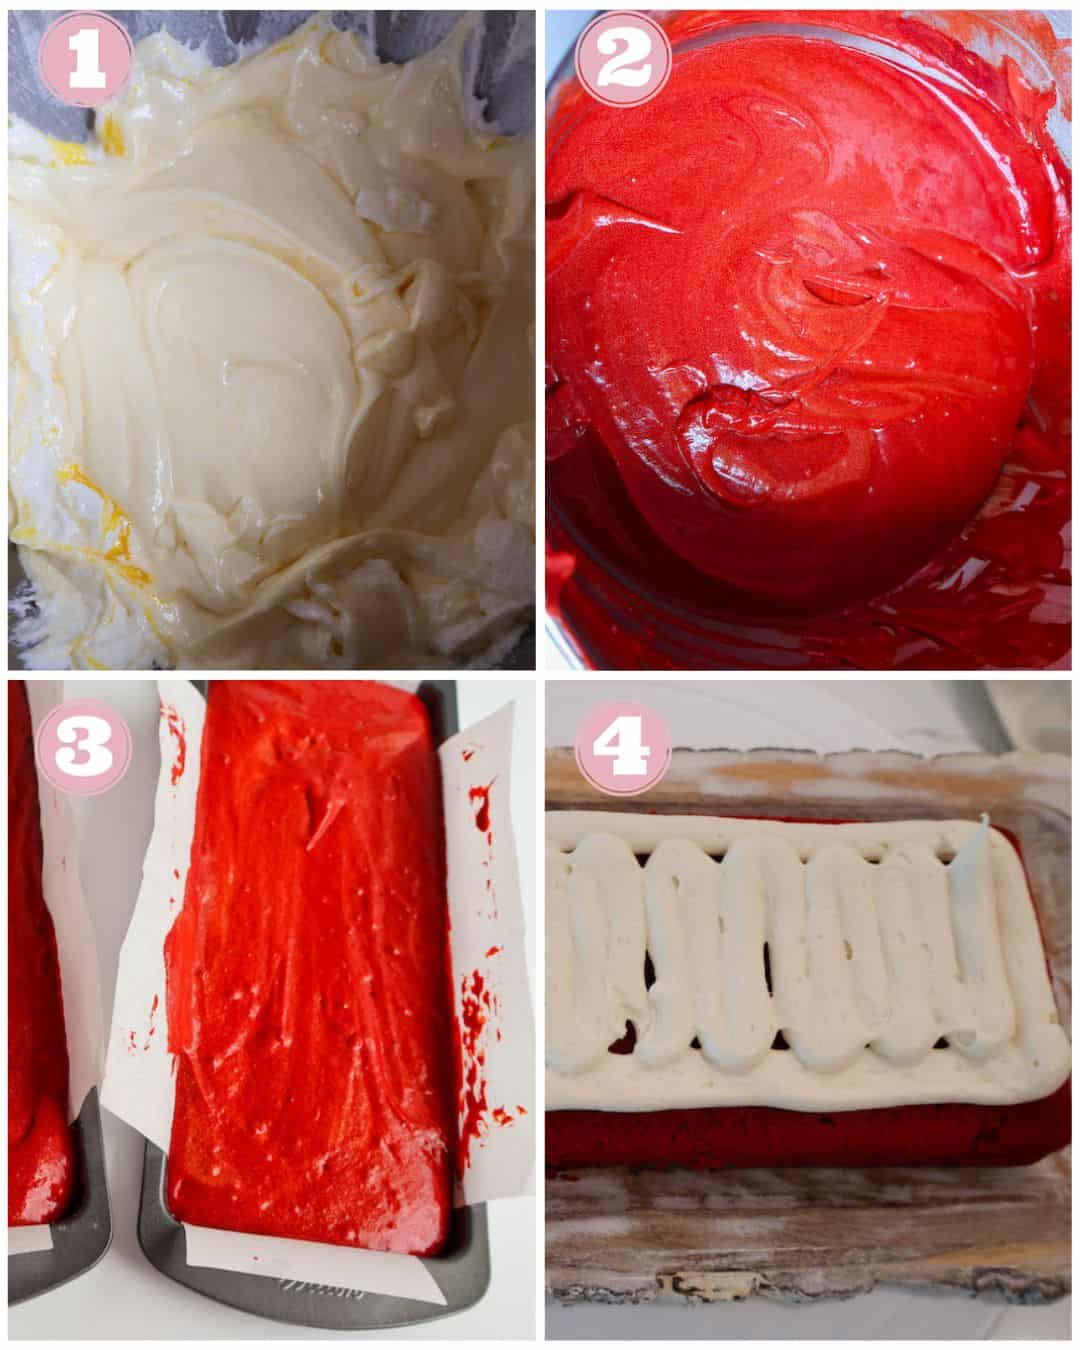 Red Velvet cake collage instructions